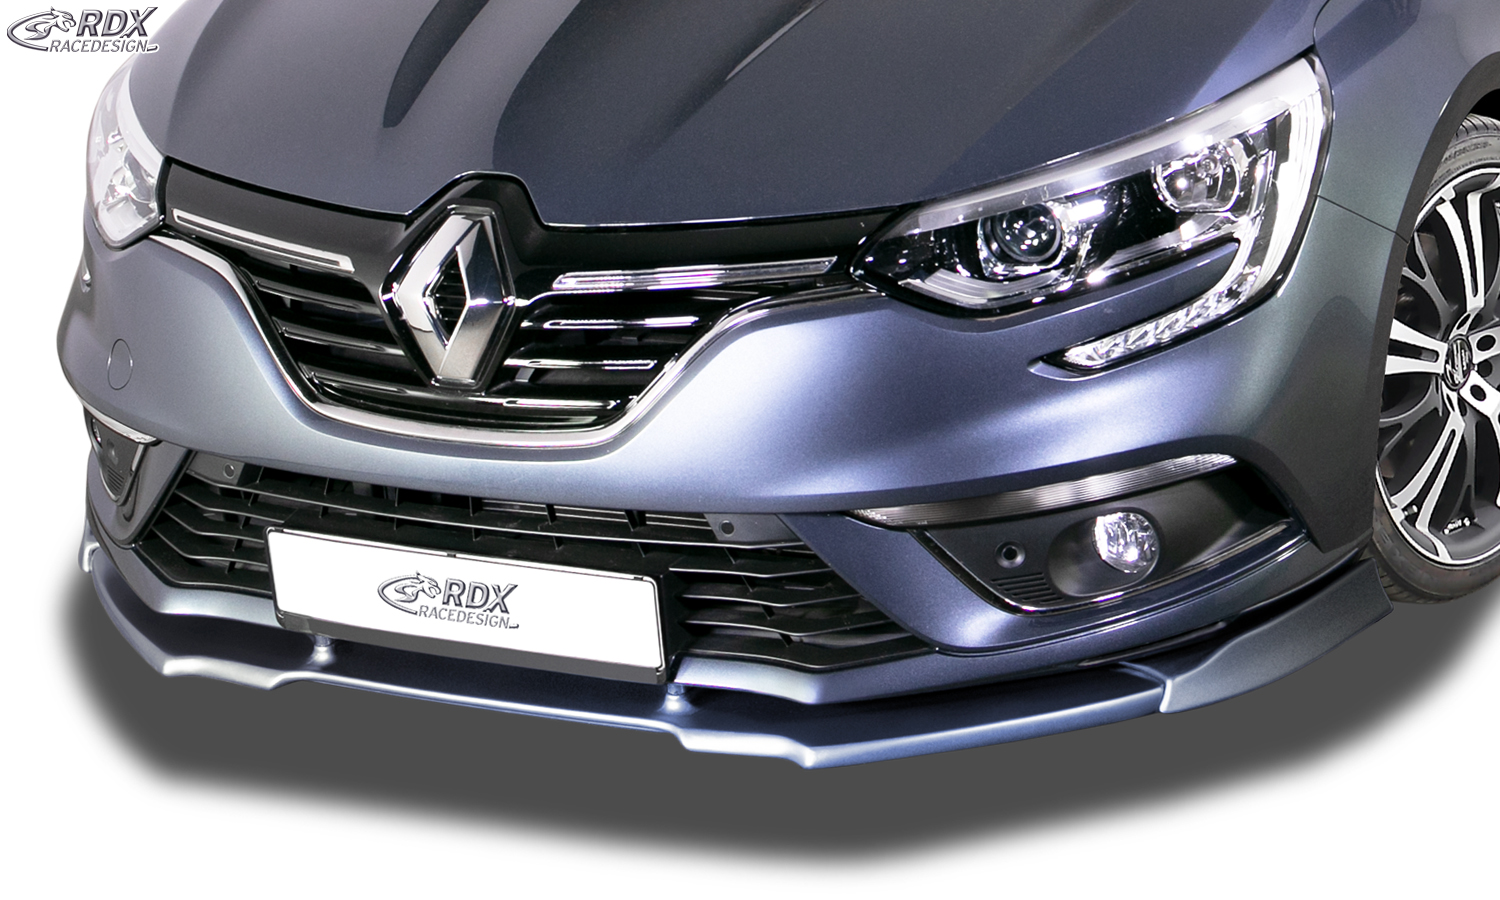 RDX Front Spoiler VARIO-X for RENAULT Megane 4 Sedan & Grandtour Front Lip Splitter